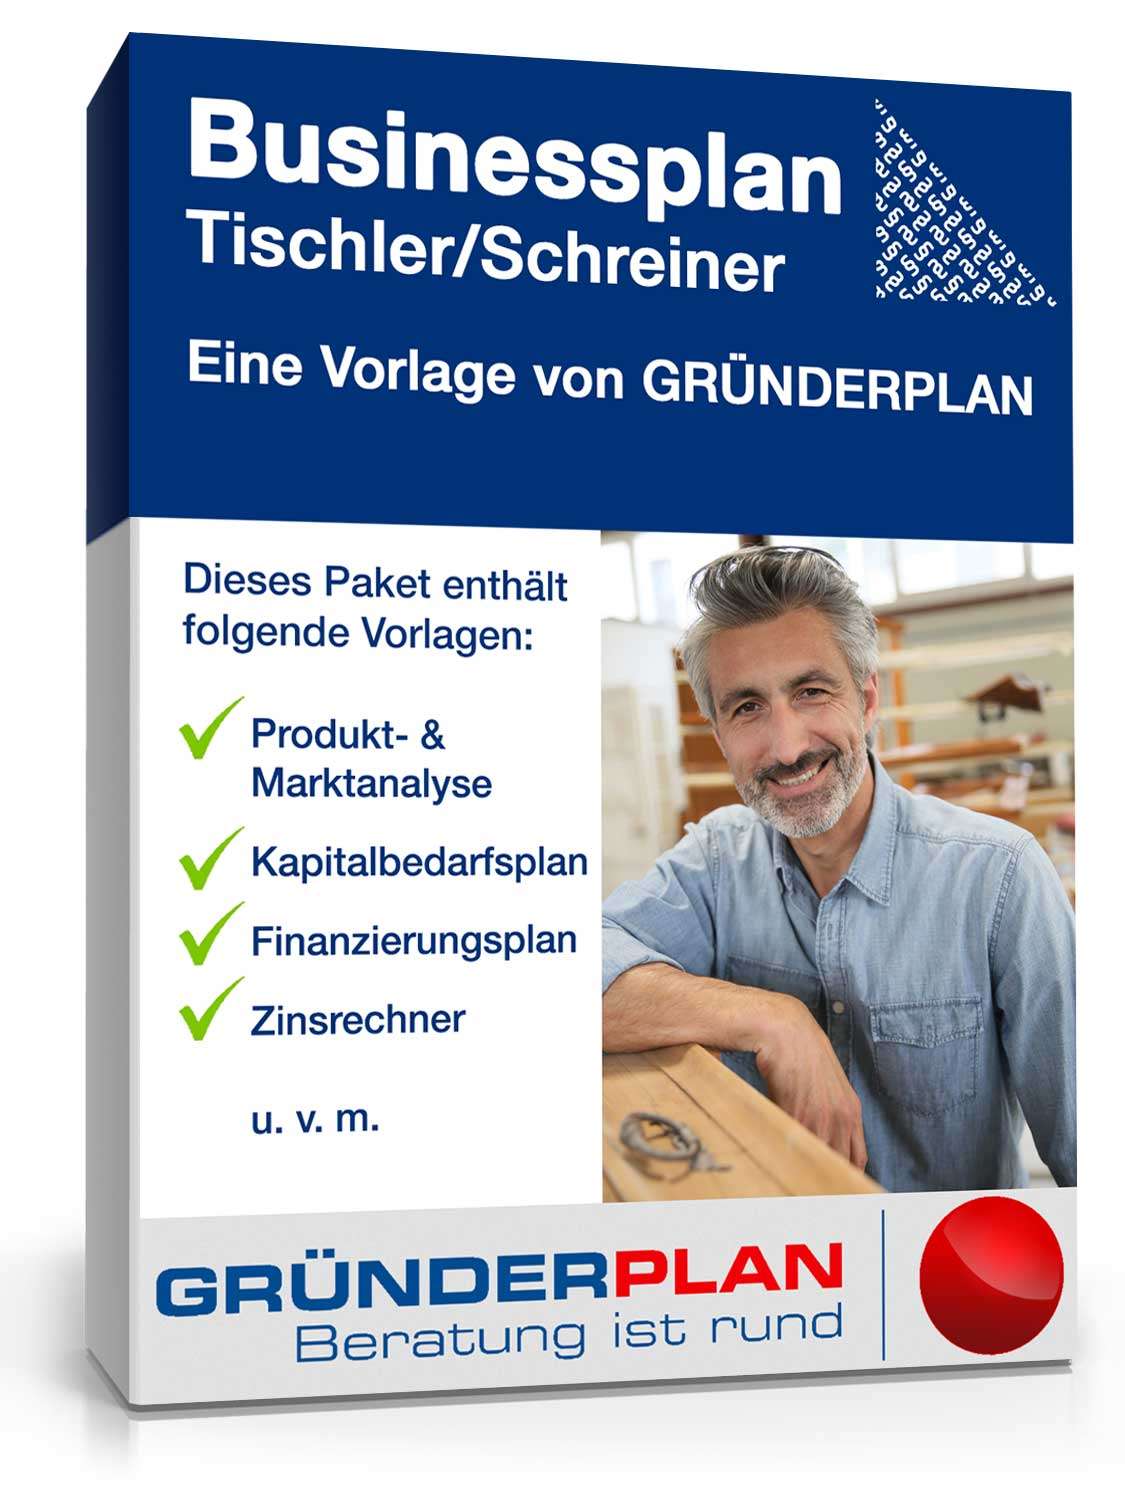 Hauptbild des Produkts: Businessplan Tischler/Schreiner von Gründerplan